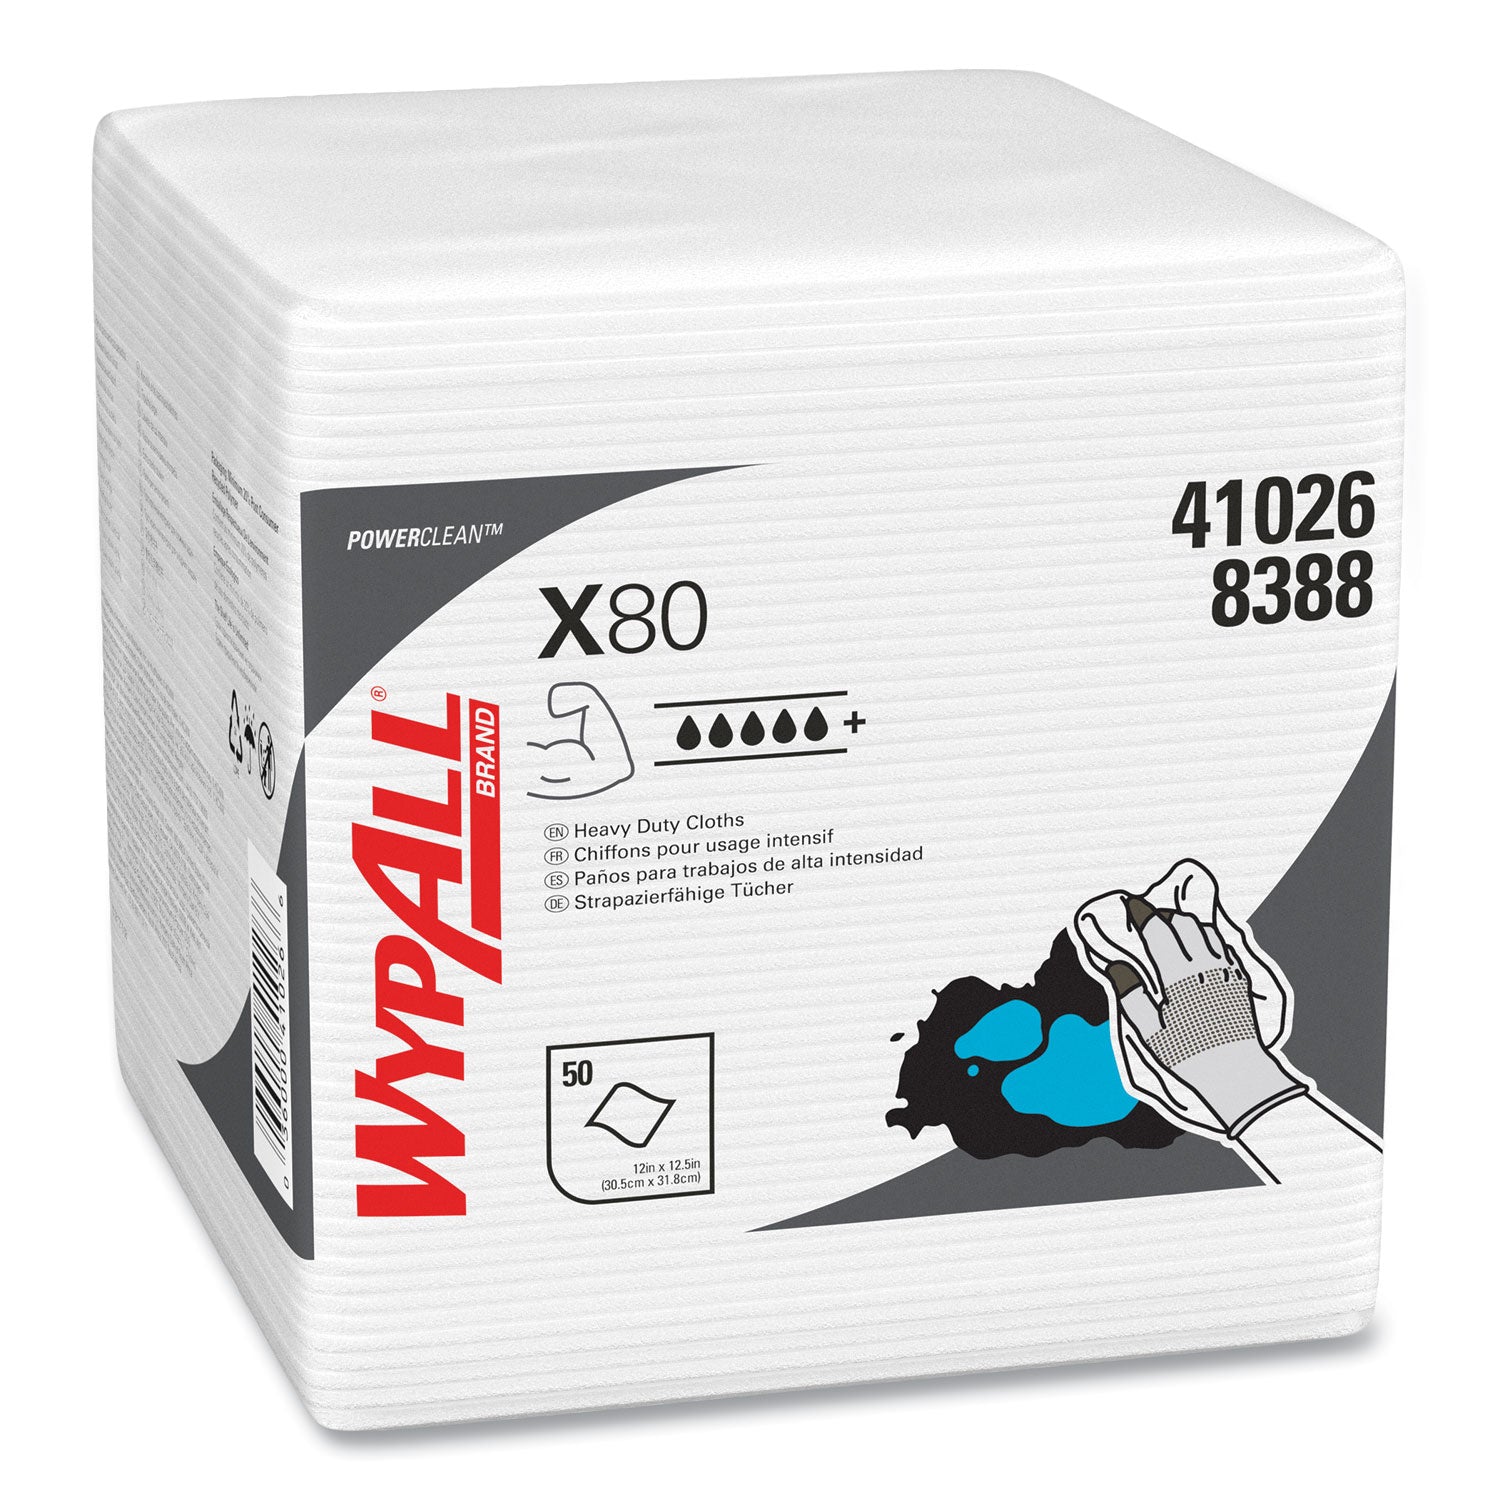 Power Clean X80 Heavy Duty Cloths, 1/4 Fold, 12.5 x 12, White, 50/Box, 4 Boxes/Carton - 